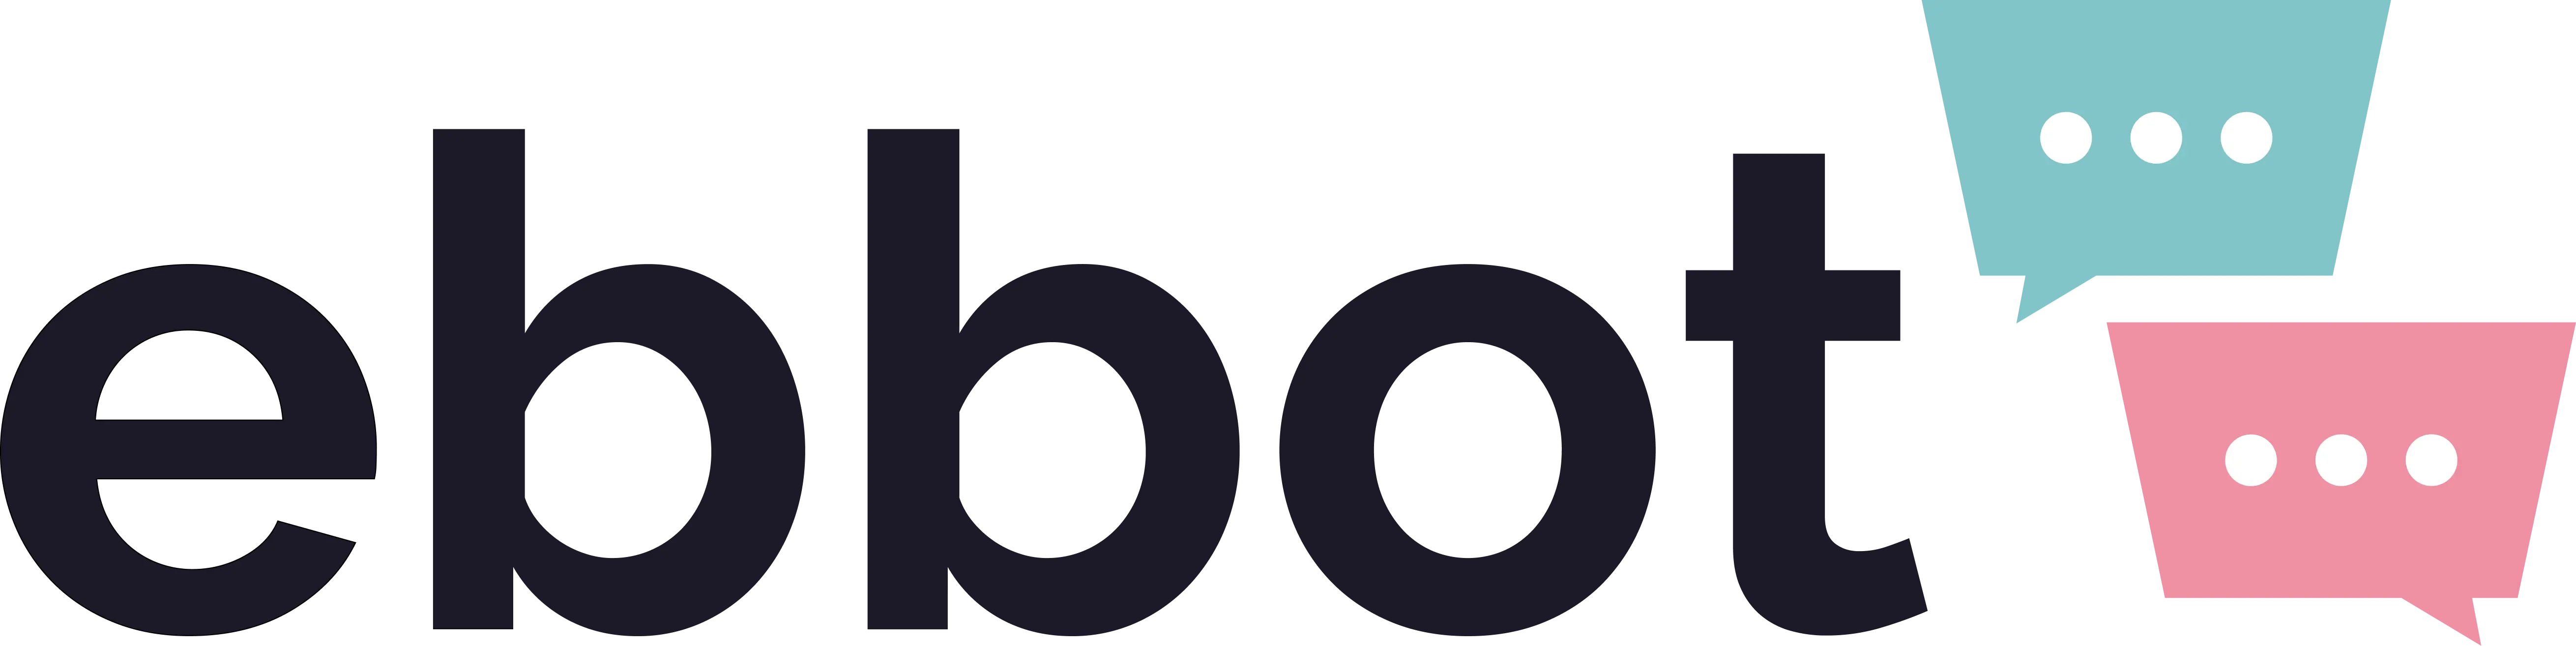 Logotyp för Ebbot